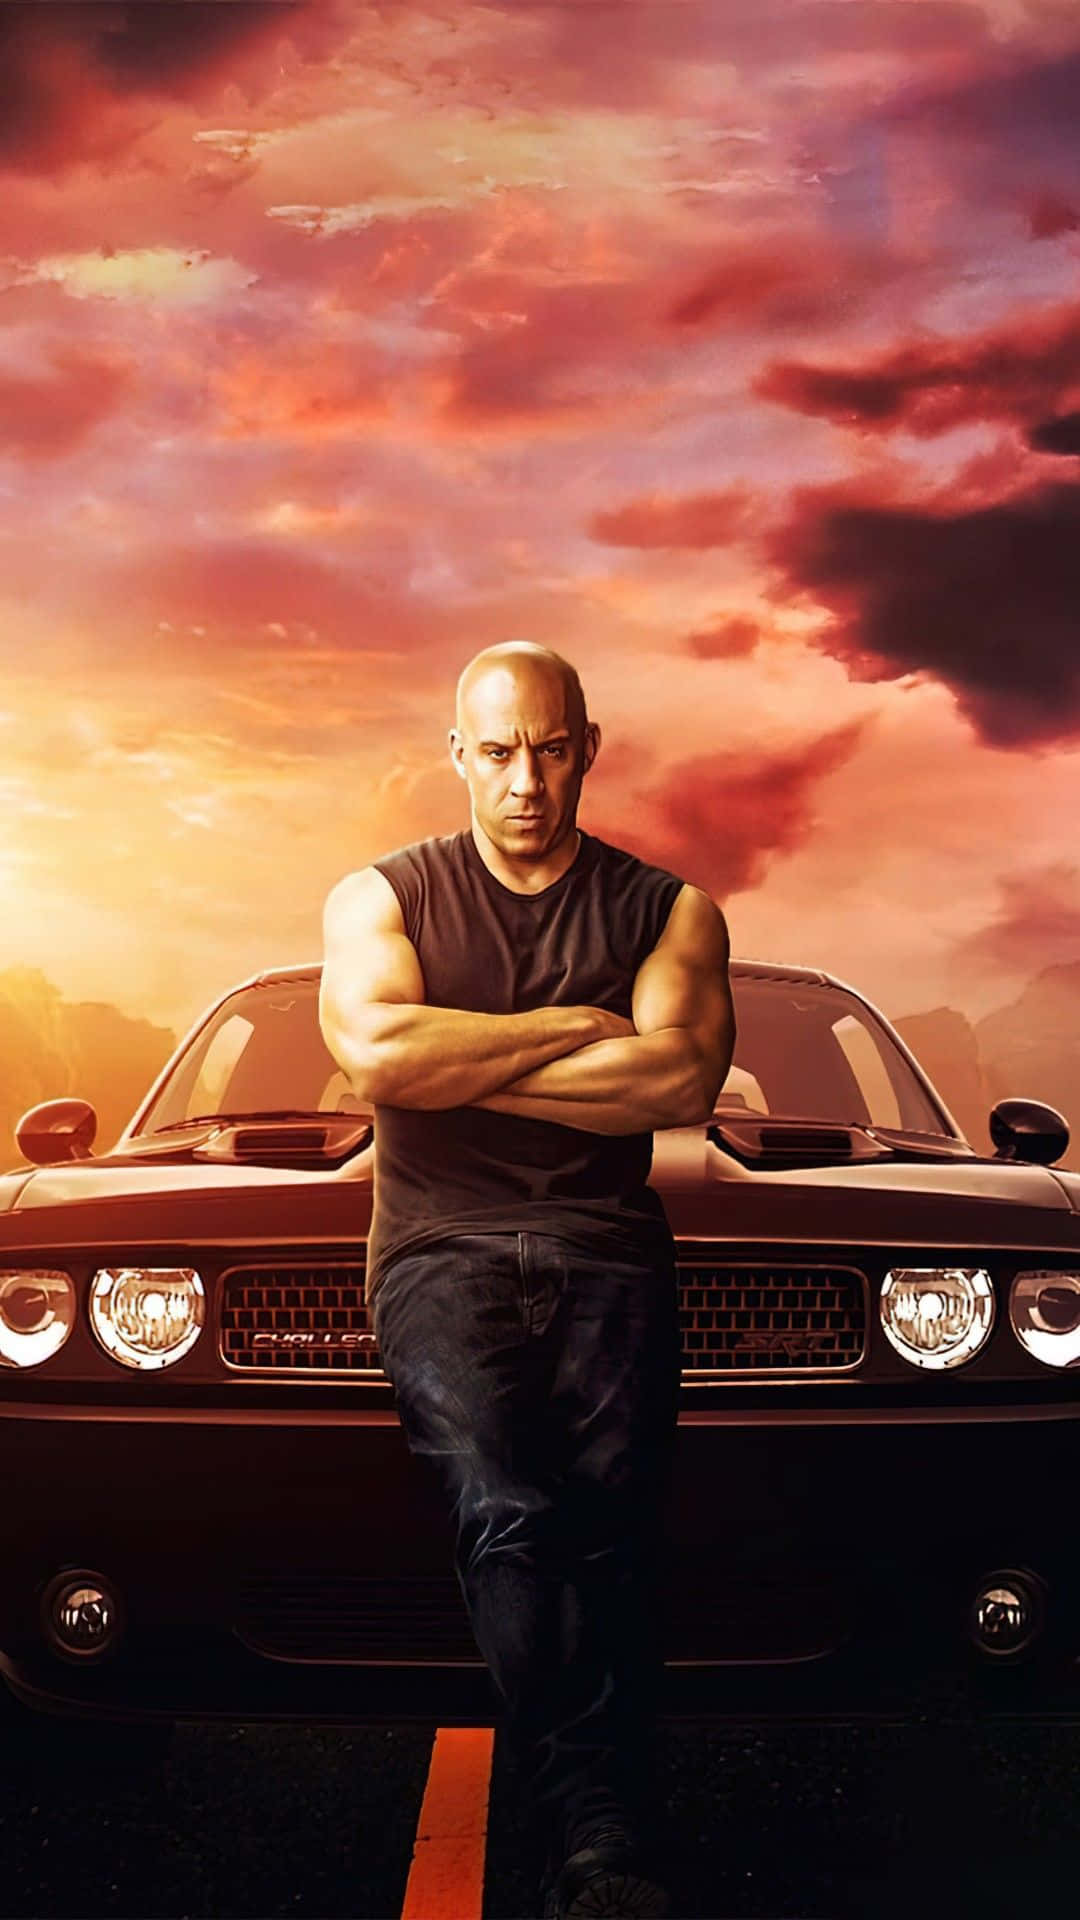 Snabboch Rasande 9 - Dominic Toretto. Wallpaper